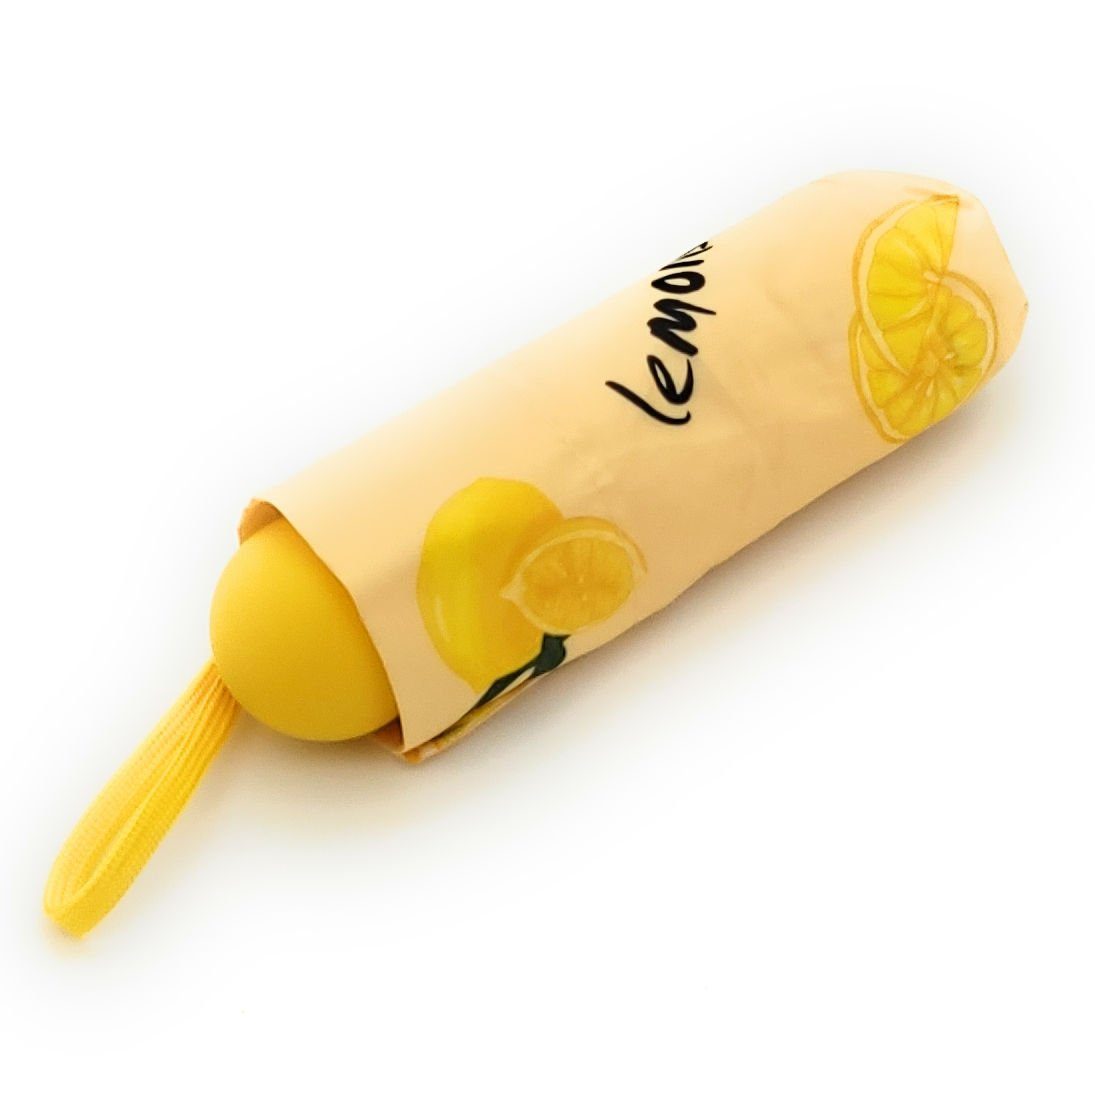 Dr. Neuser Taschenregenschirm Regenschirm Lemons fröhliche Mini & kompakt bunt, klein Zitronen